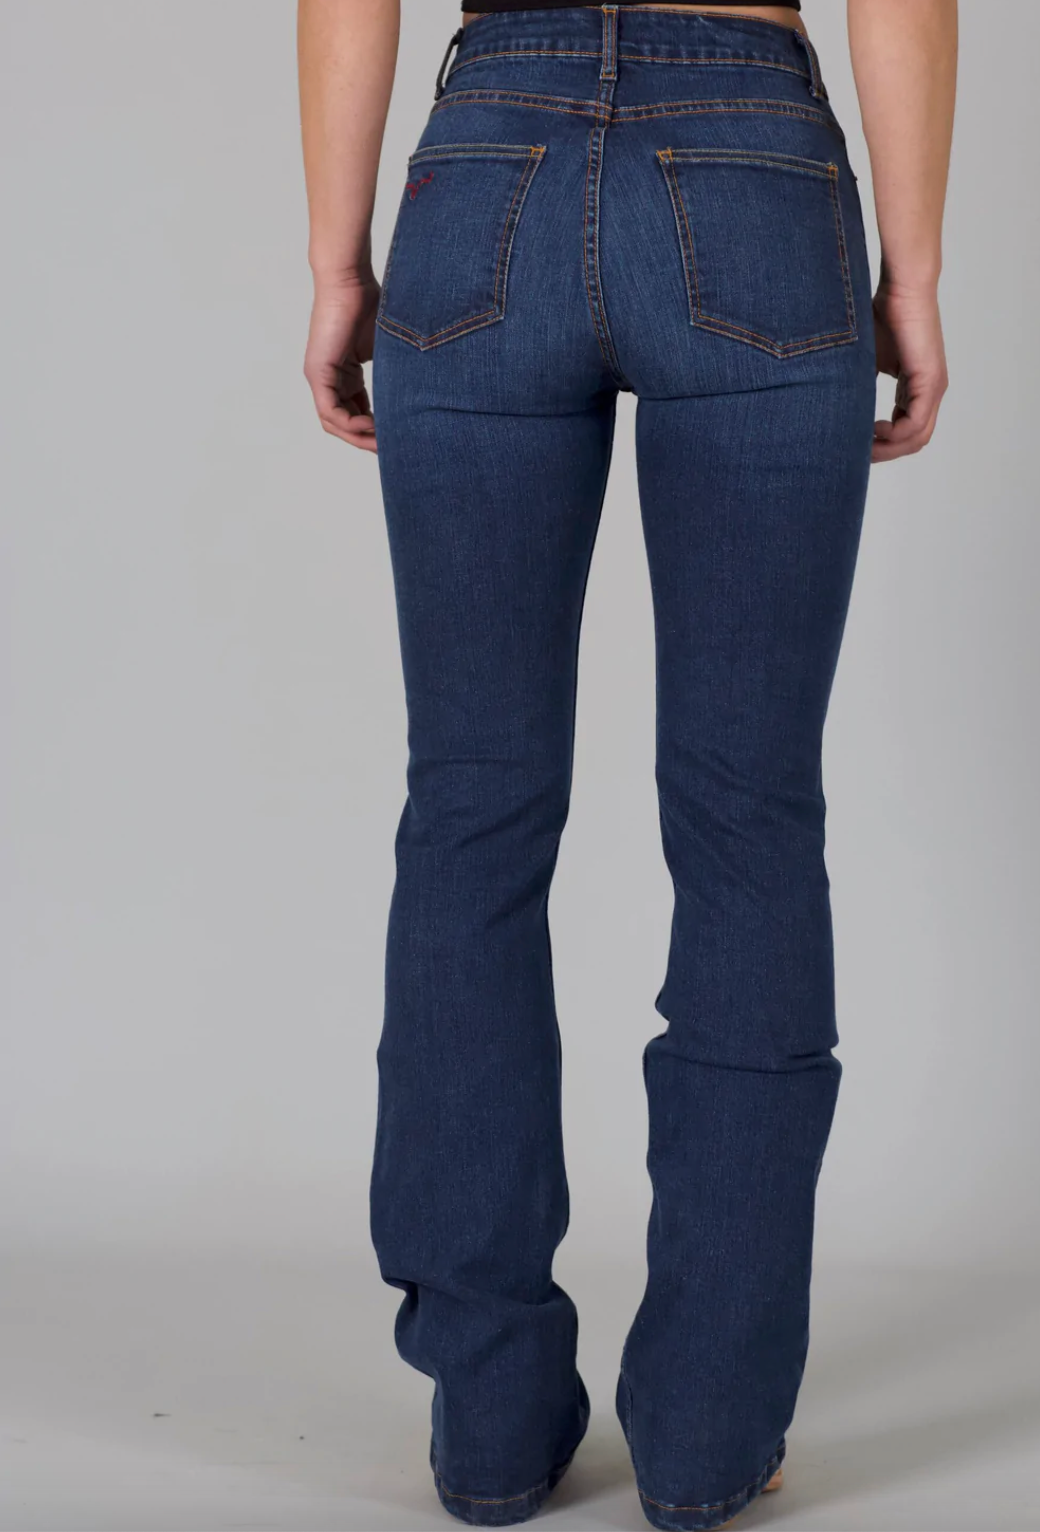 
                  
                    Chloe- Kimes Ranch Women's Jeans
                  
                